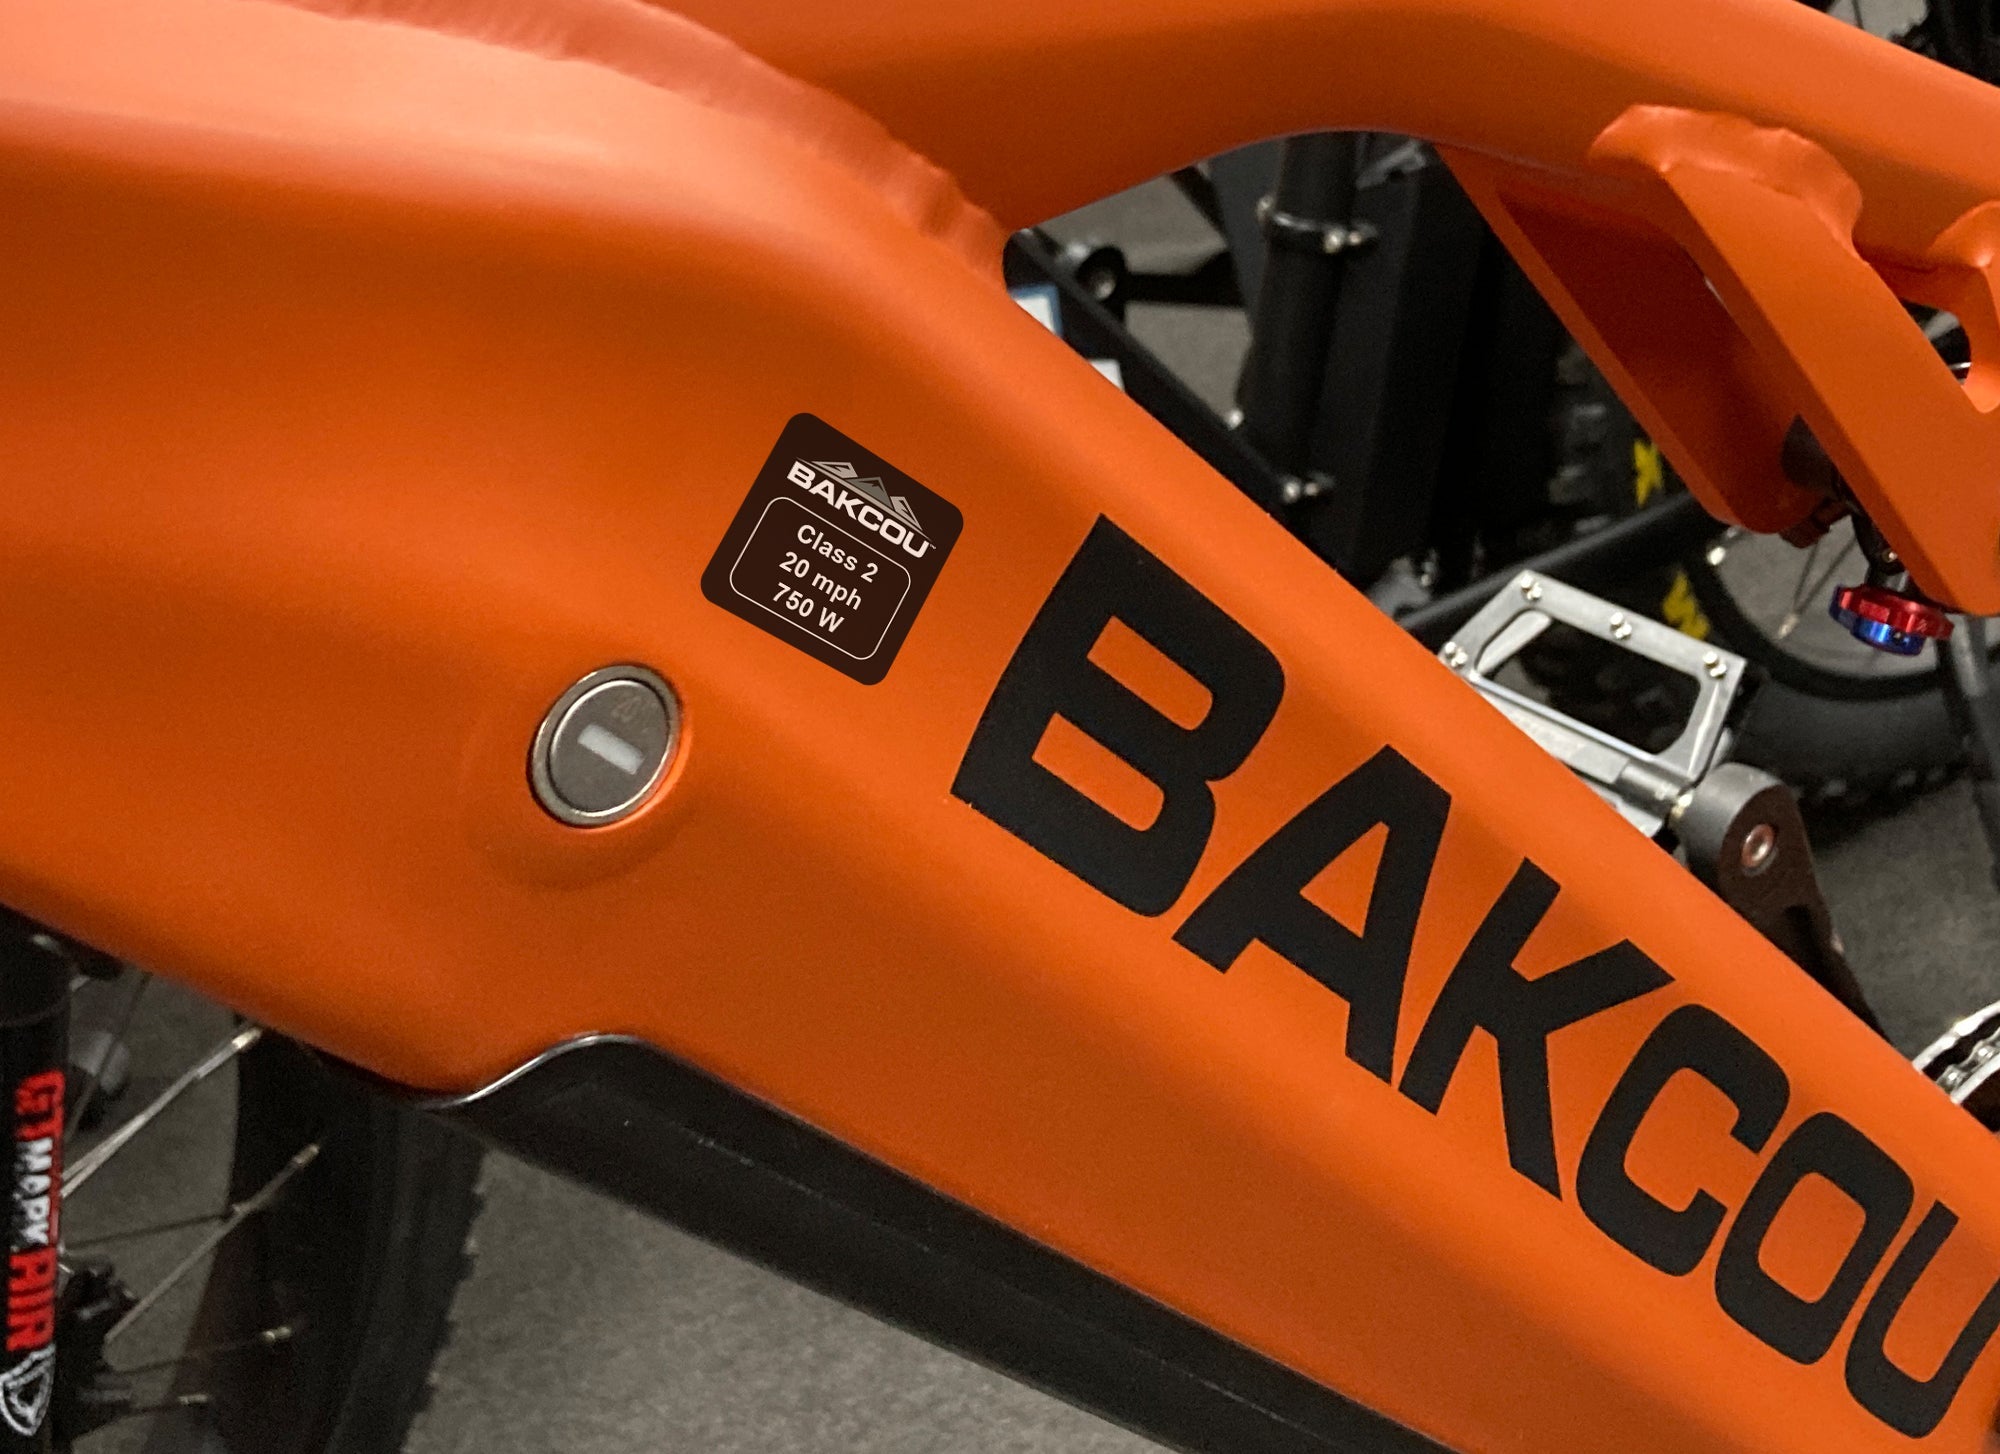 Weather-Proof 750w Bike Label - Bakcou